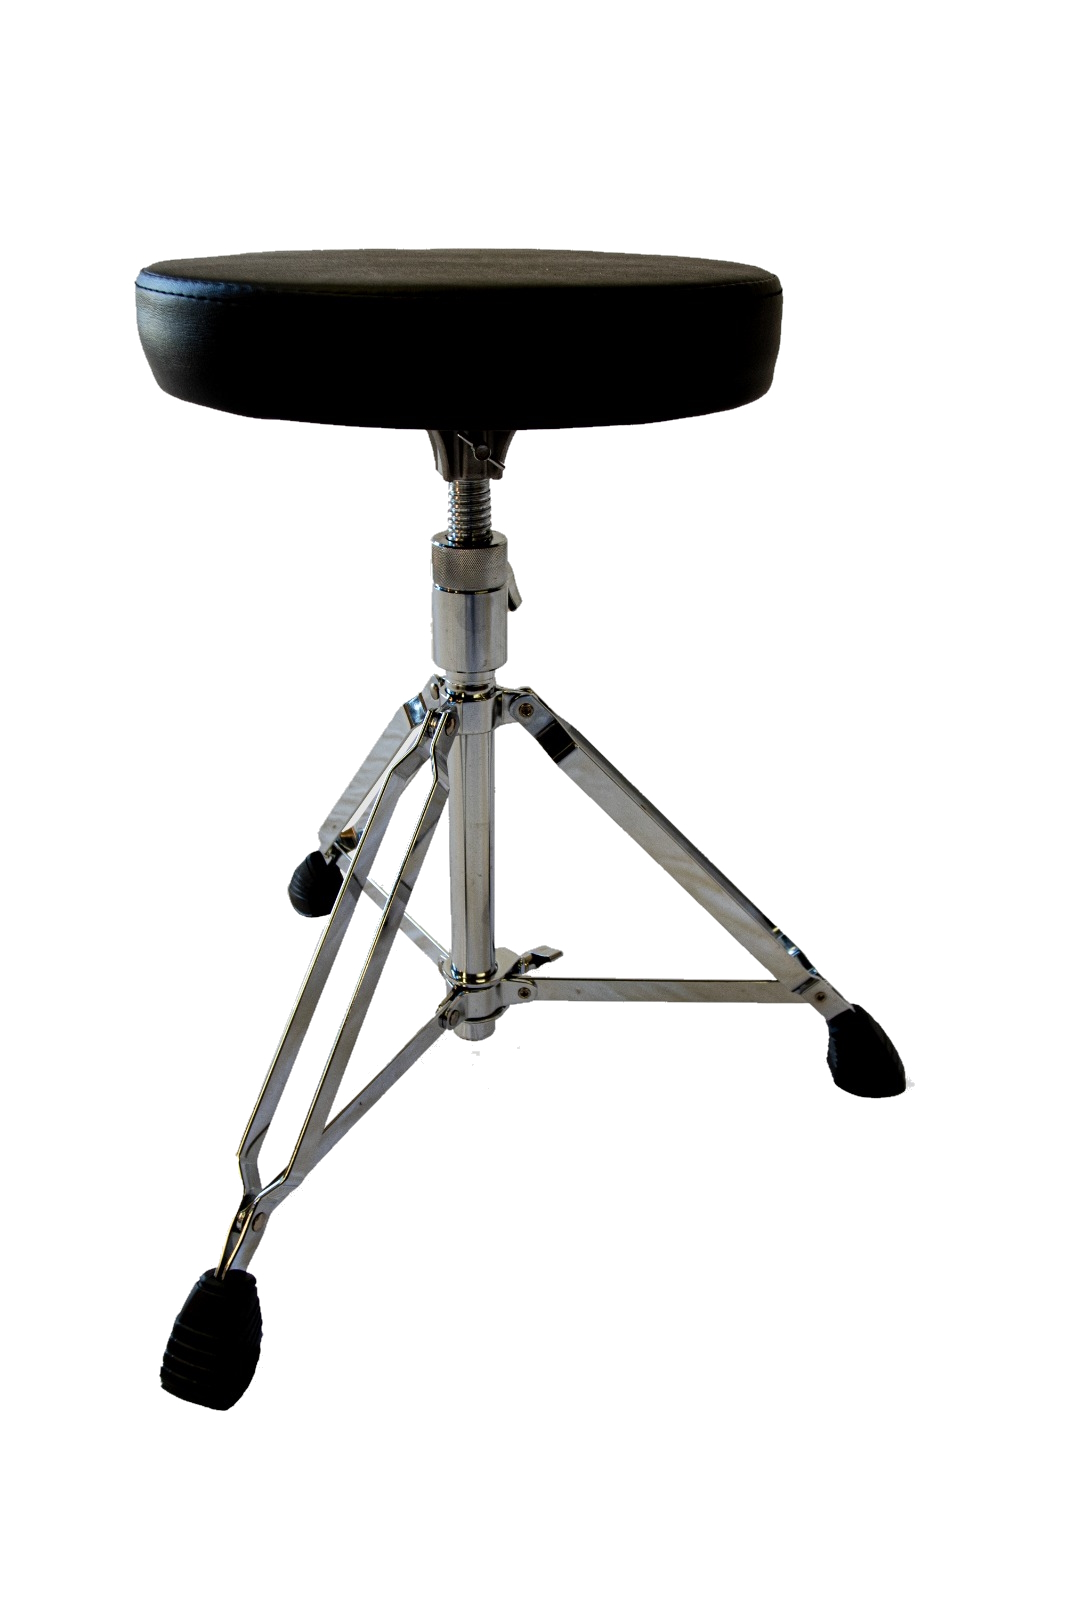 Стулья и коврики для барабанщиков Zowag NTR925Z Drum Throne 925Z Entry Level Series обеденные стулья 6 штук